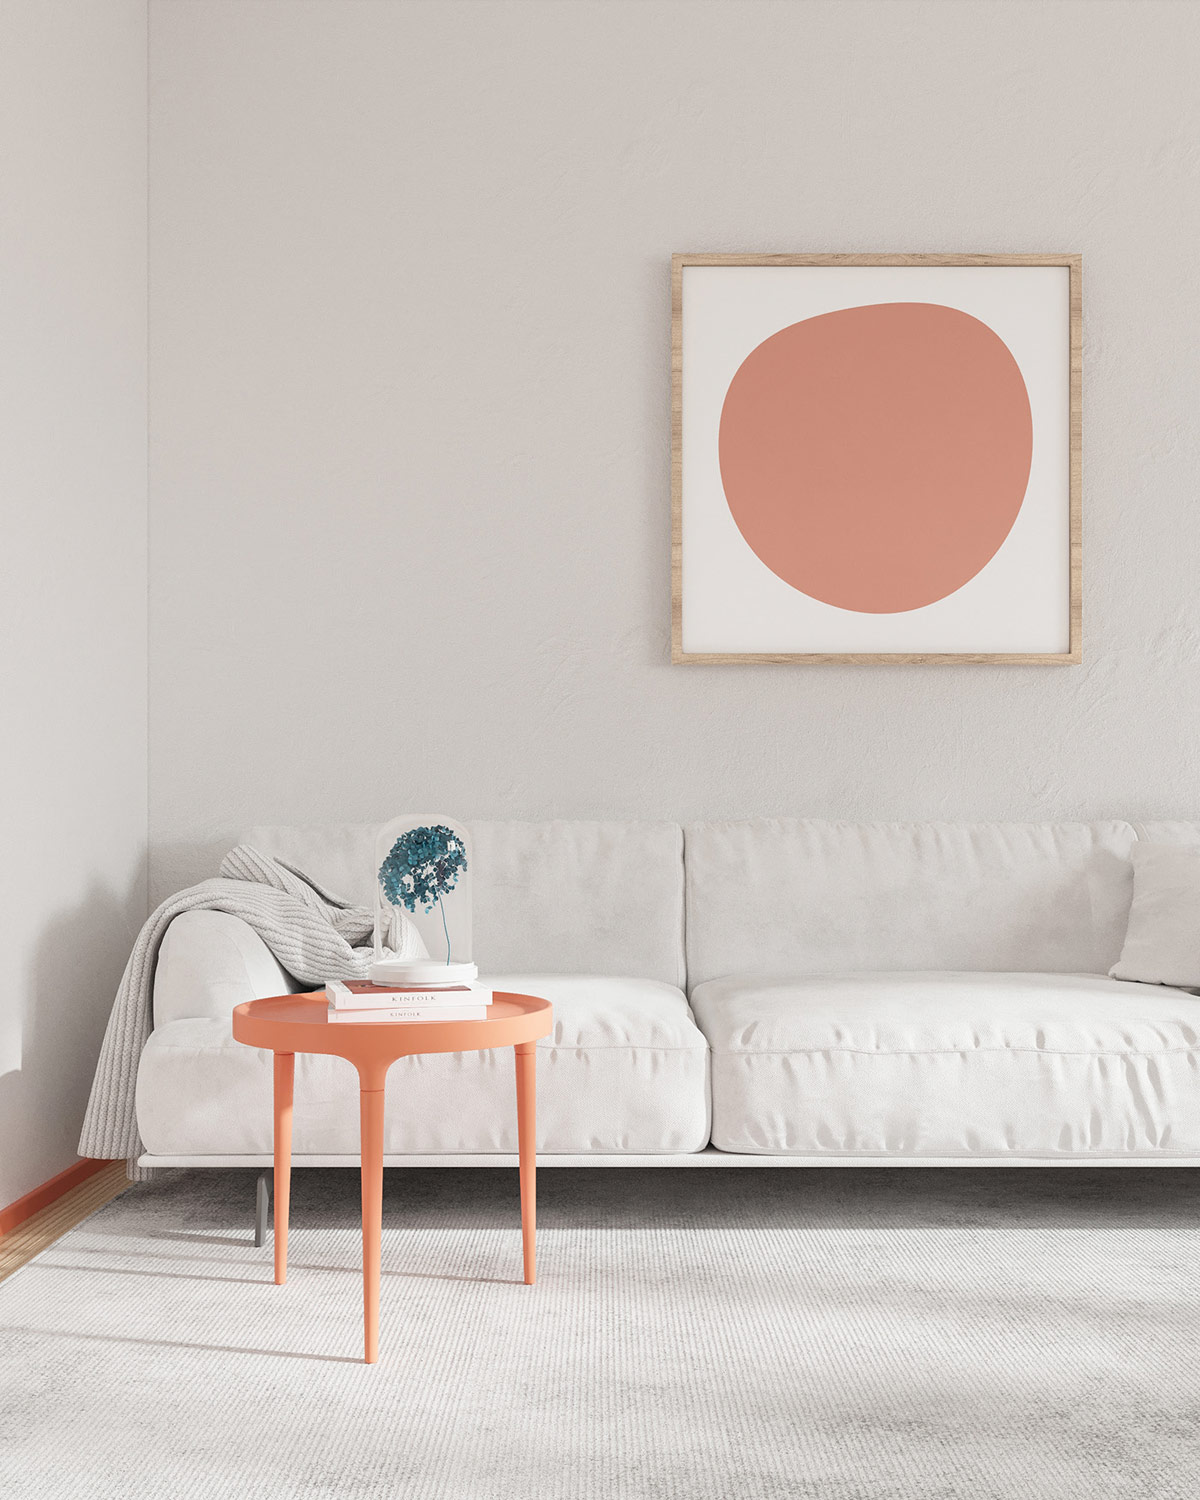 Hình ảnh góc phòng khách nổi bật với bàn trà màu cam đất xinh xắn